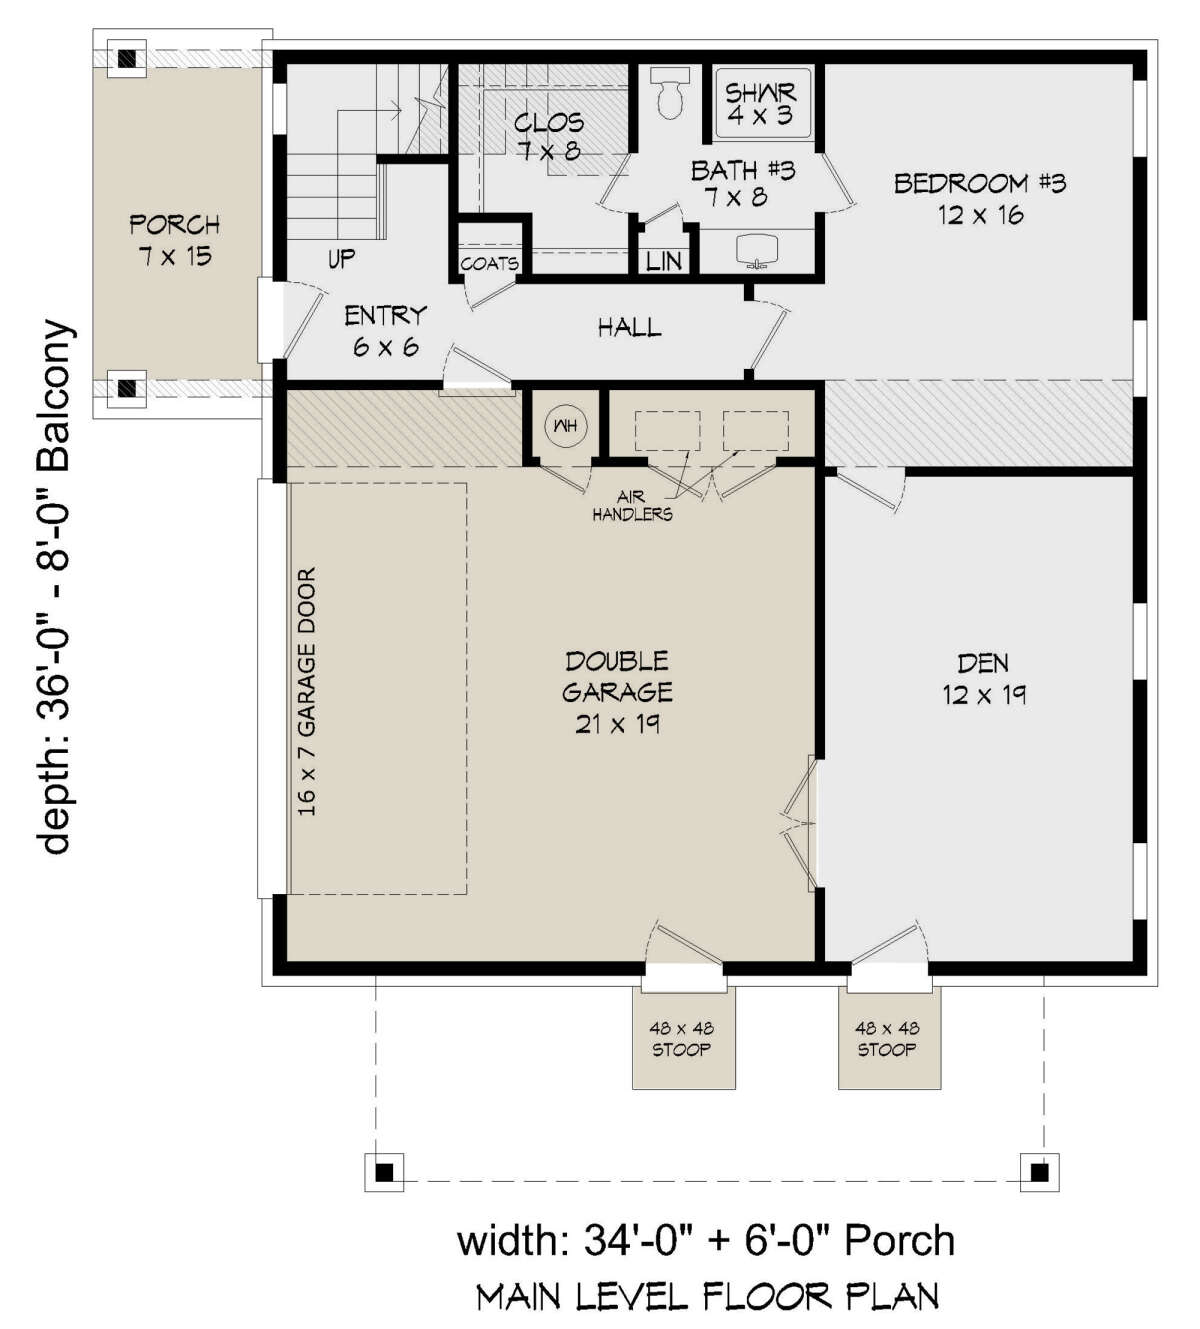 Full Set of single story 3 bedroom house plans 2,662 sq ft 